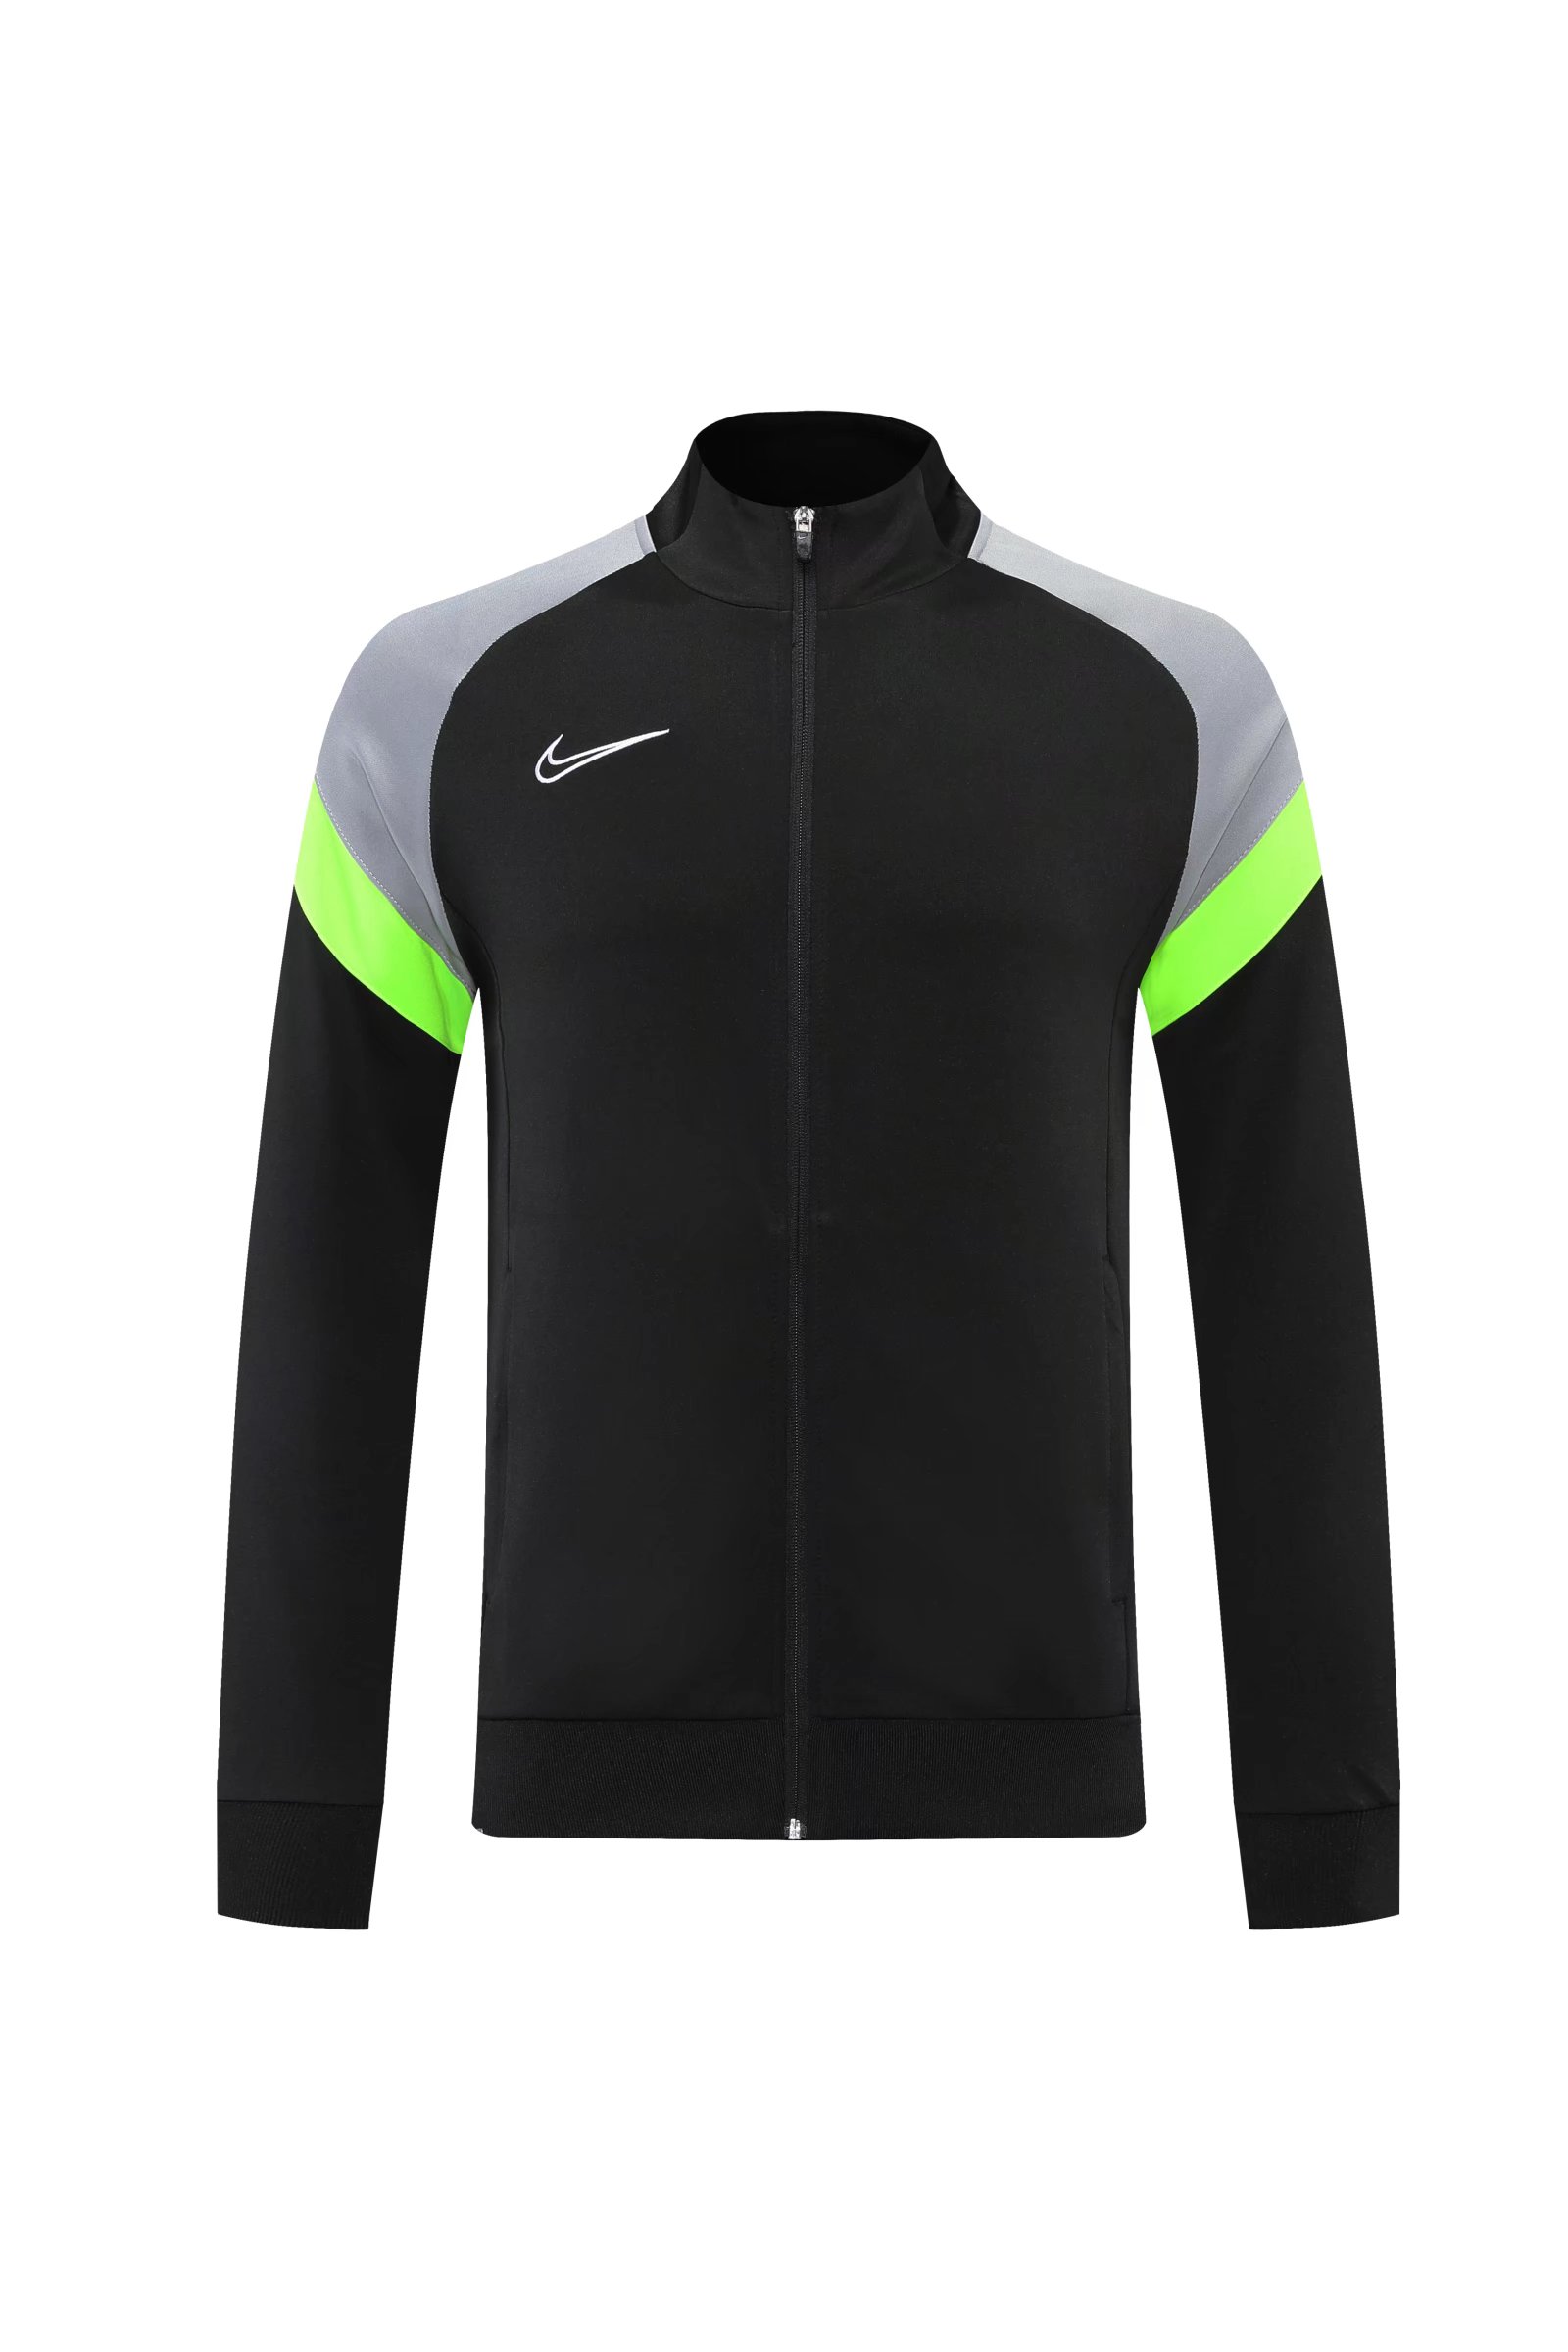 Customize Training Jacket Kit (Jacket+Pants) Grey&Green 2022